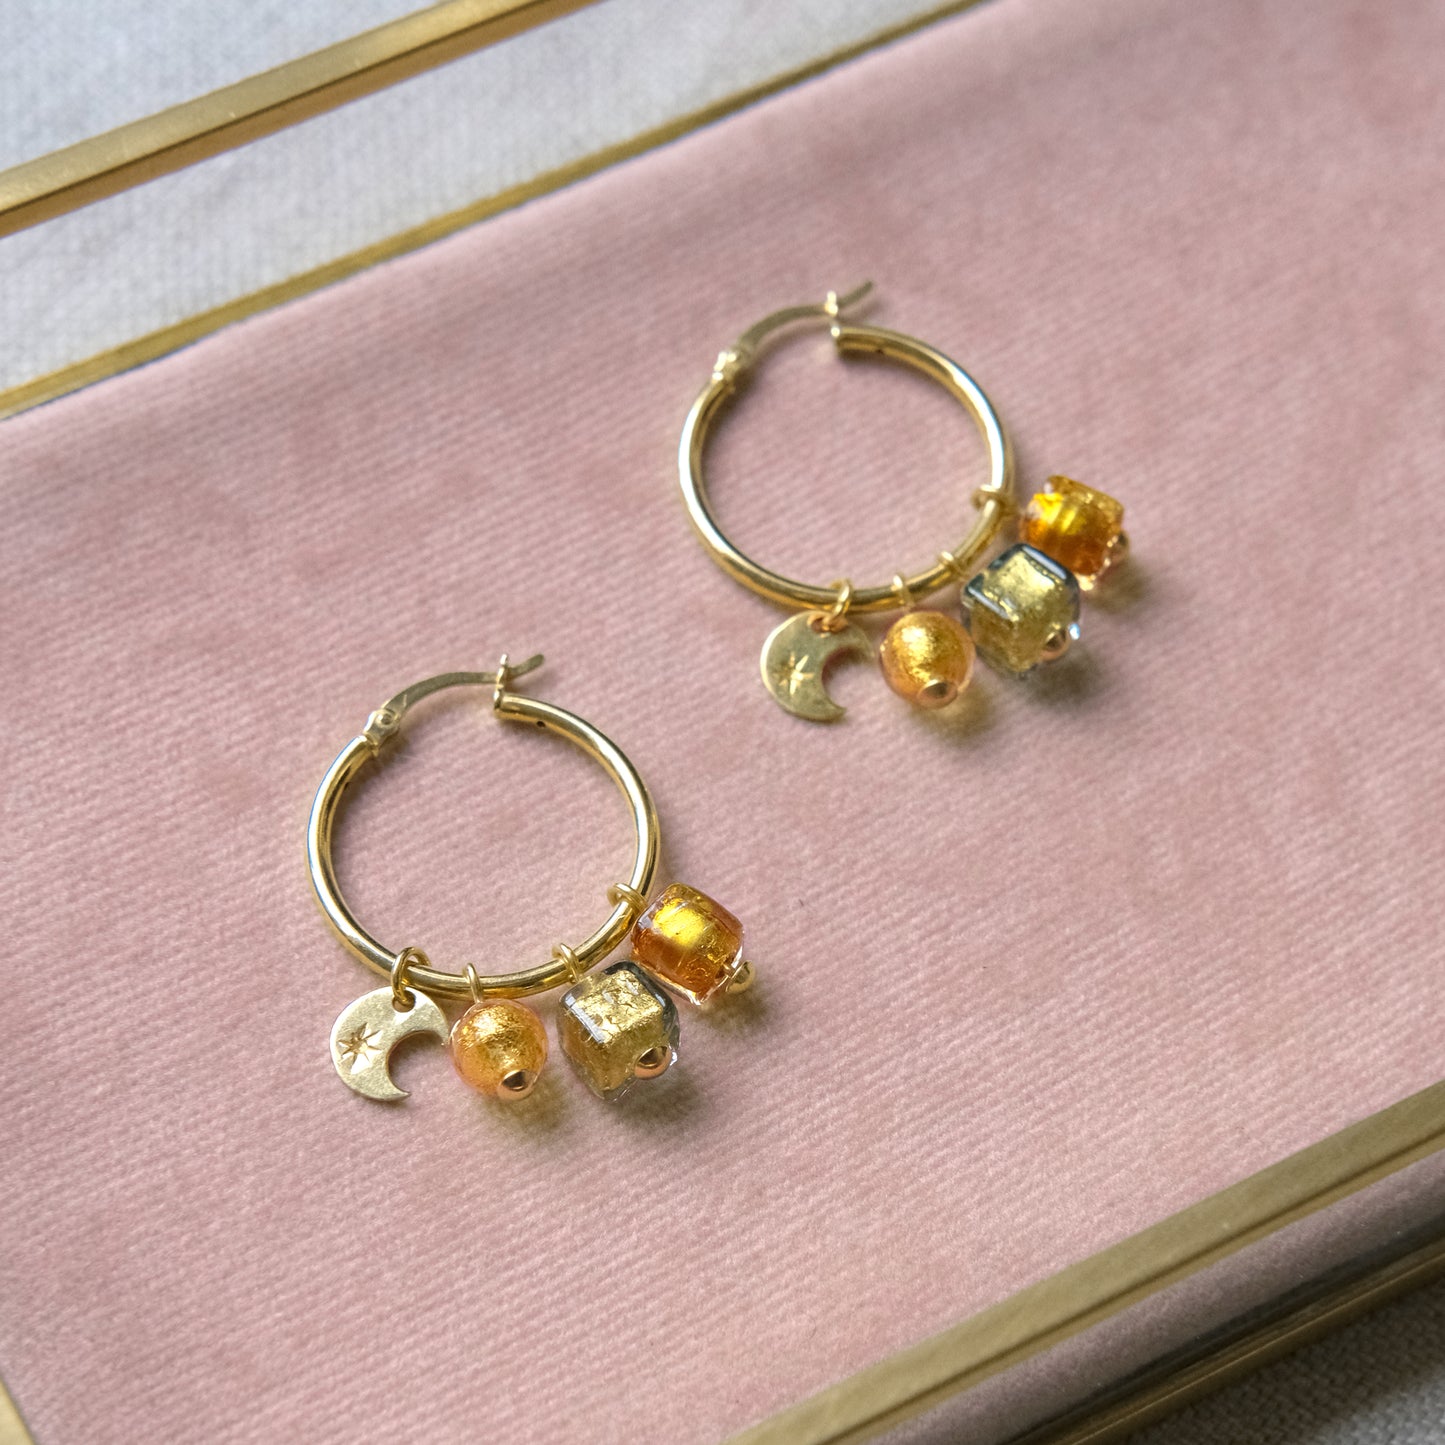 Perlina Moon Hoop Earrings 24mm - Gold vermeil